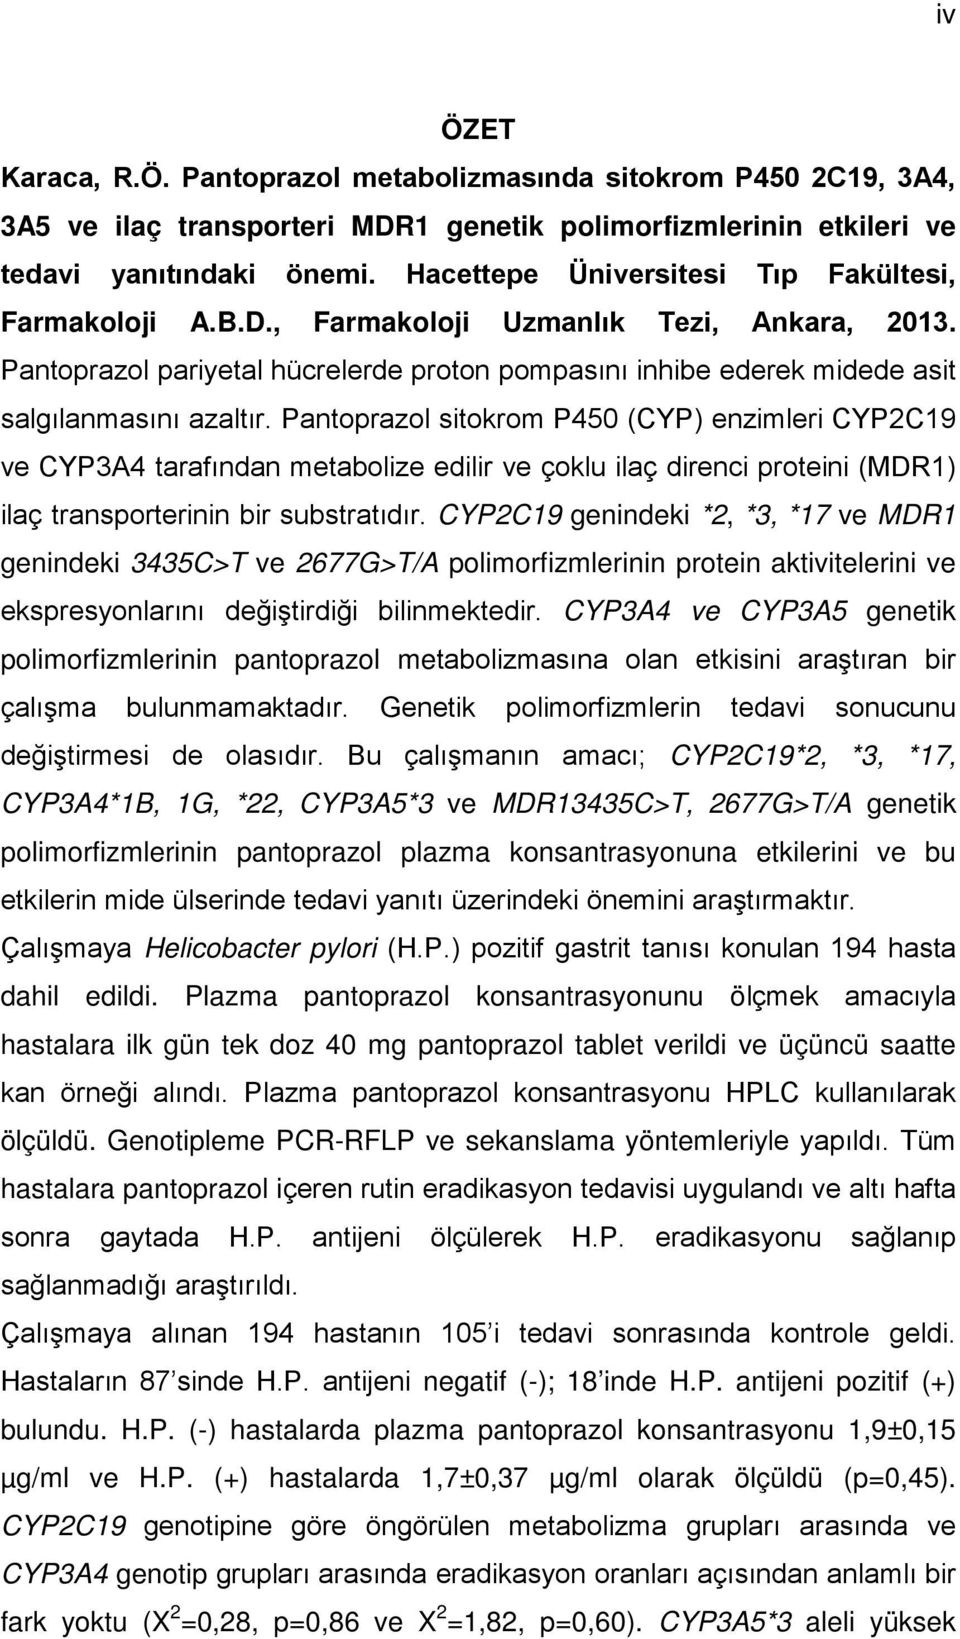 Pantoprazol sitokrom P450 (CYP) enzimleri CYP2C19 ve CYP3A4 tarafından metabolize edilir ve çoklu ilaç direnci proteini (MDR1) ilaç transporterinin bir substratıdır.